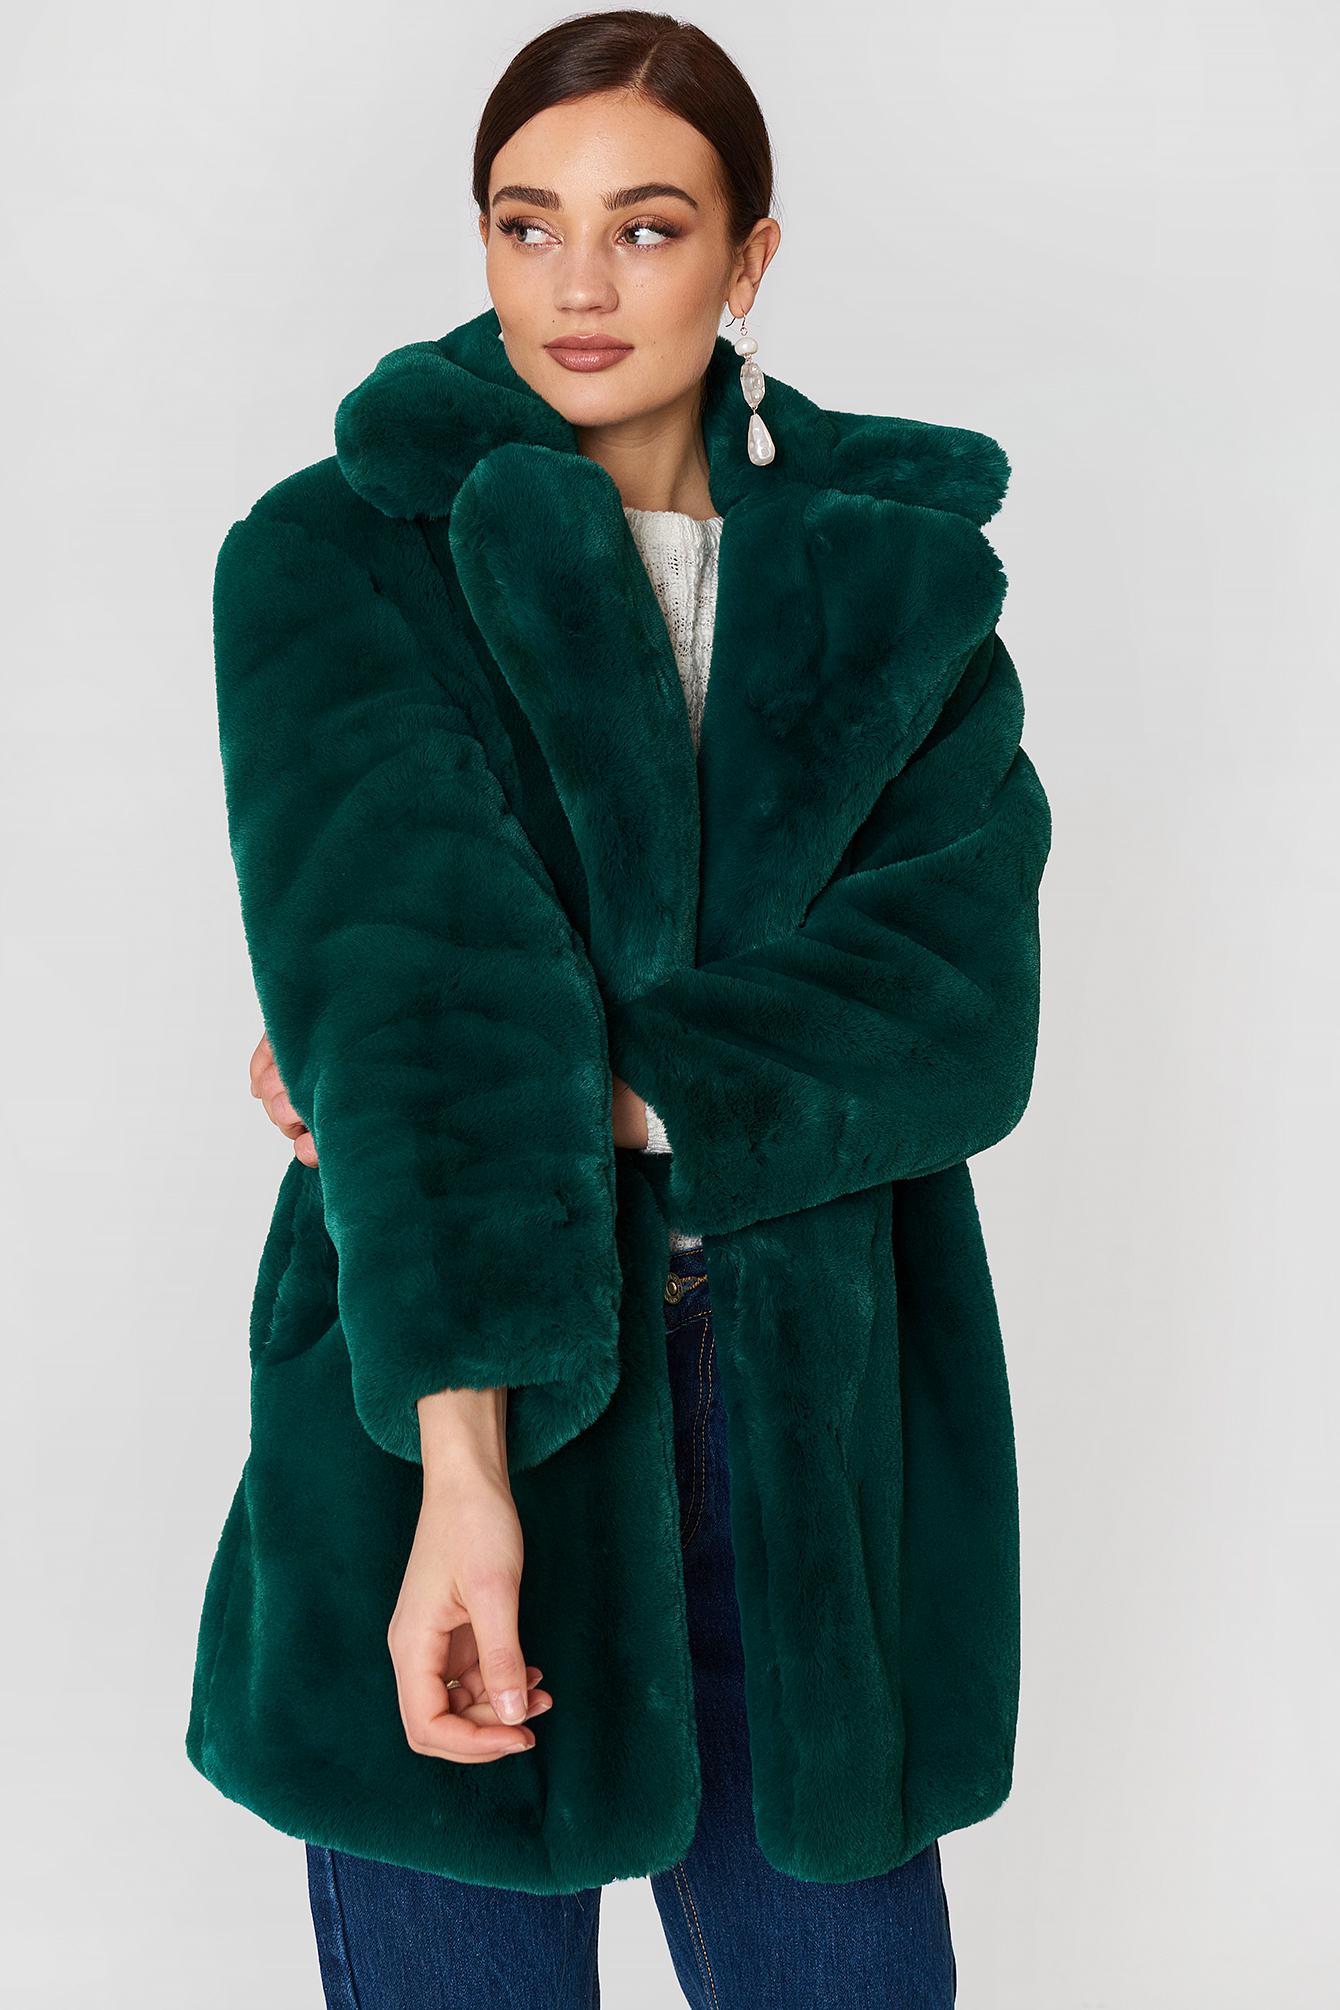 Mango Lapels Faux Fur Coat in Green | Lyst